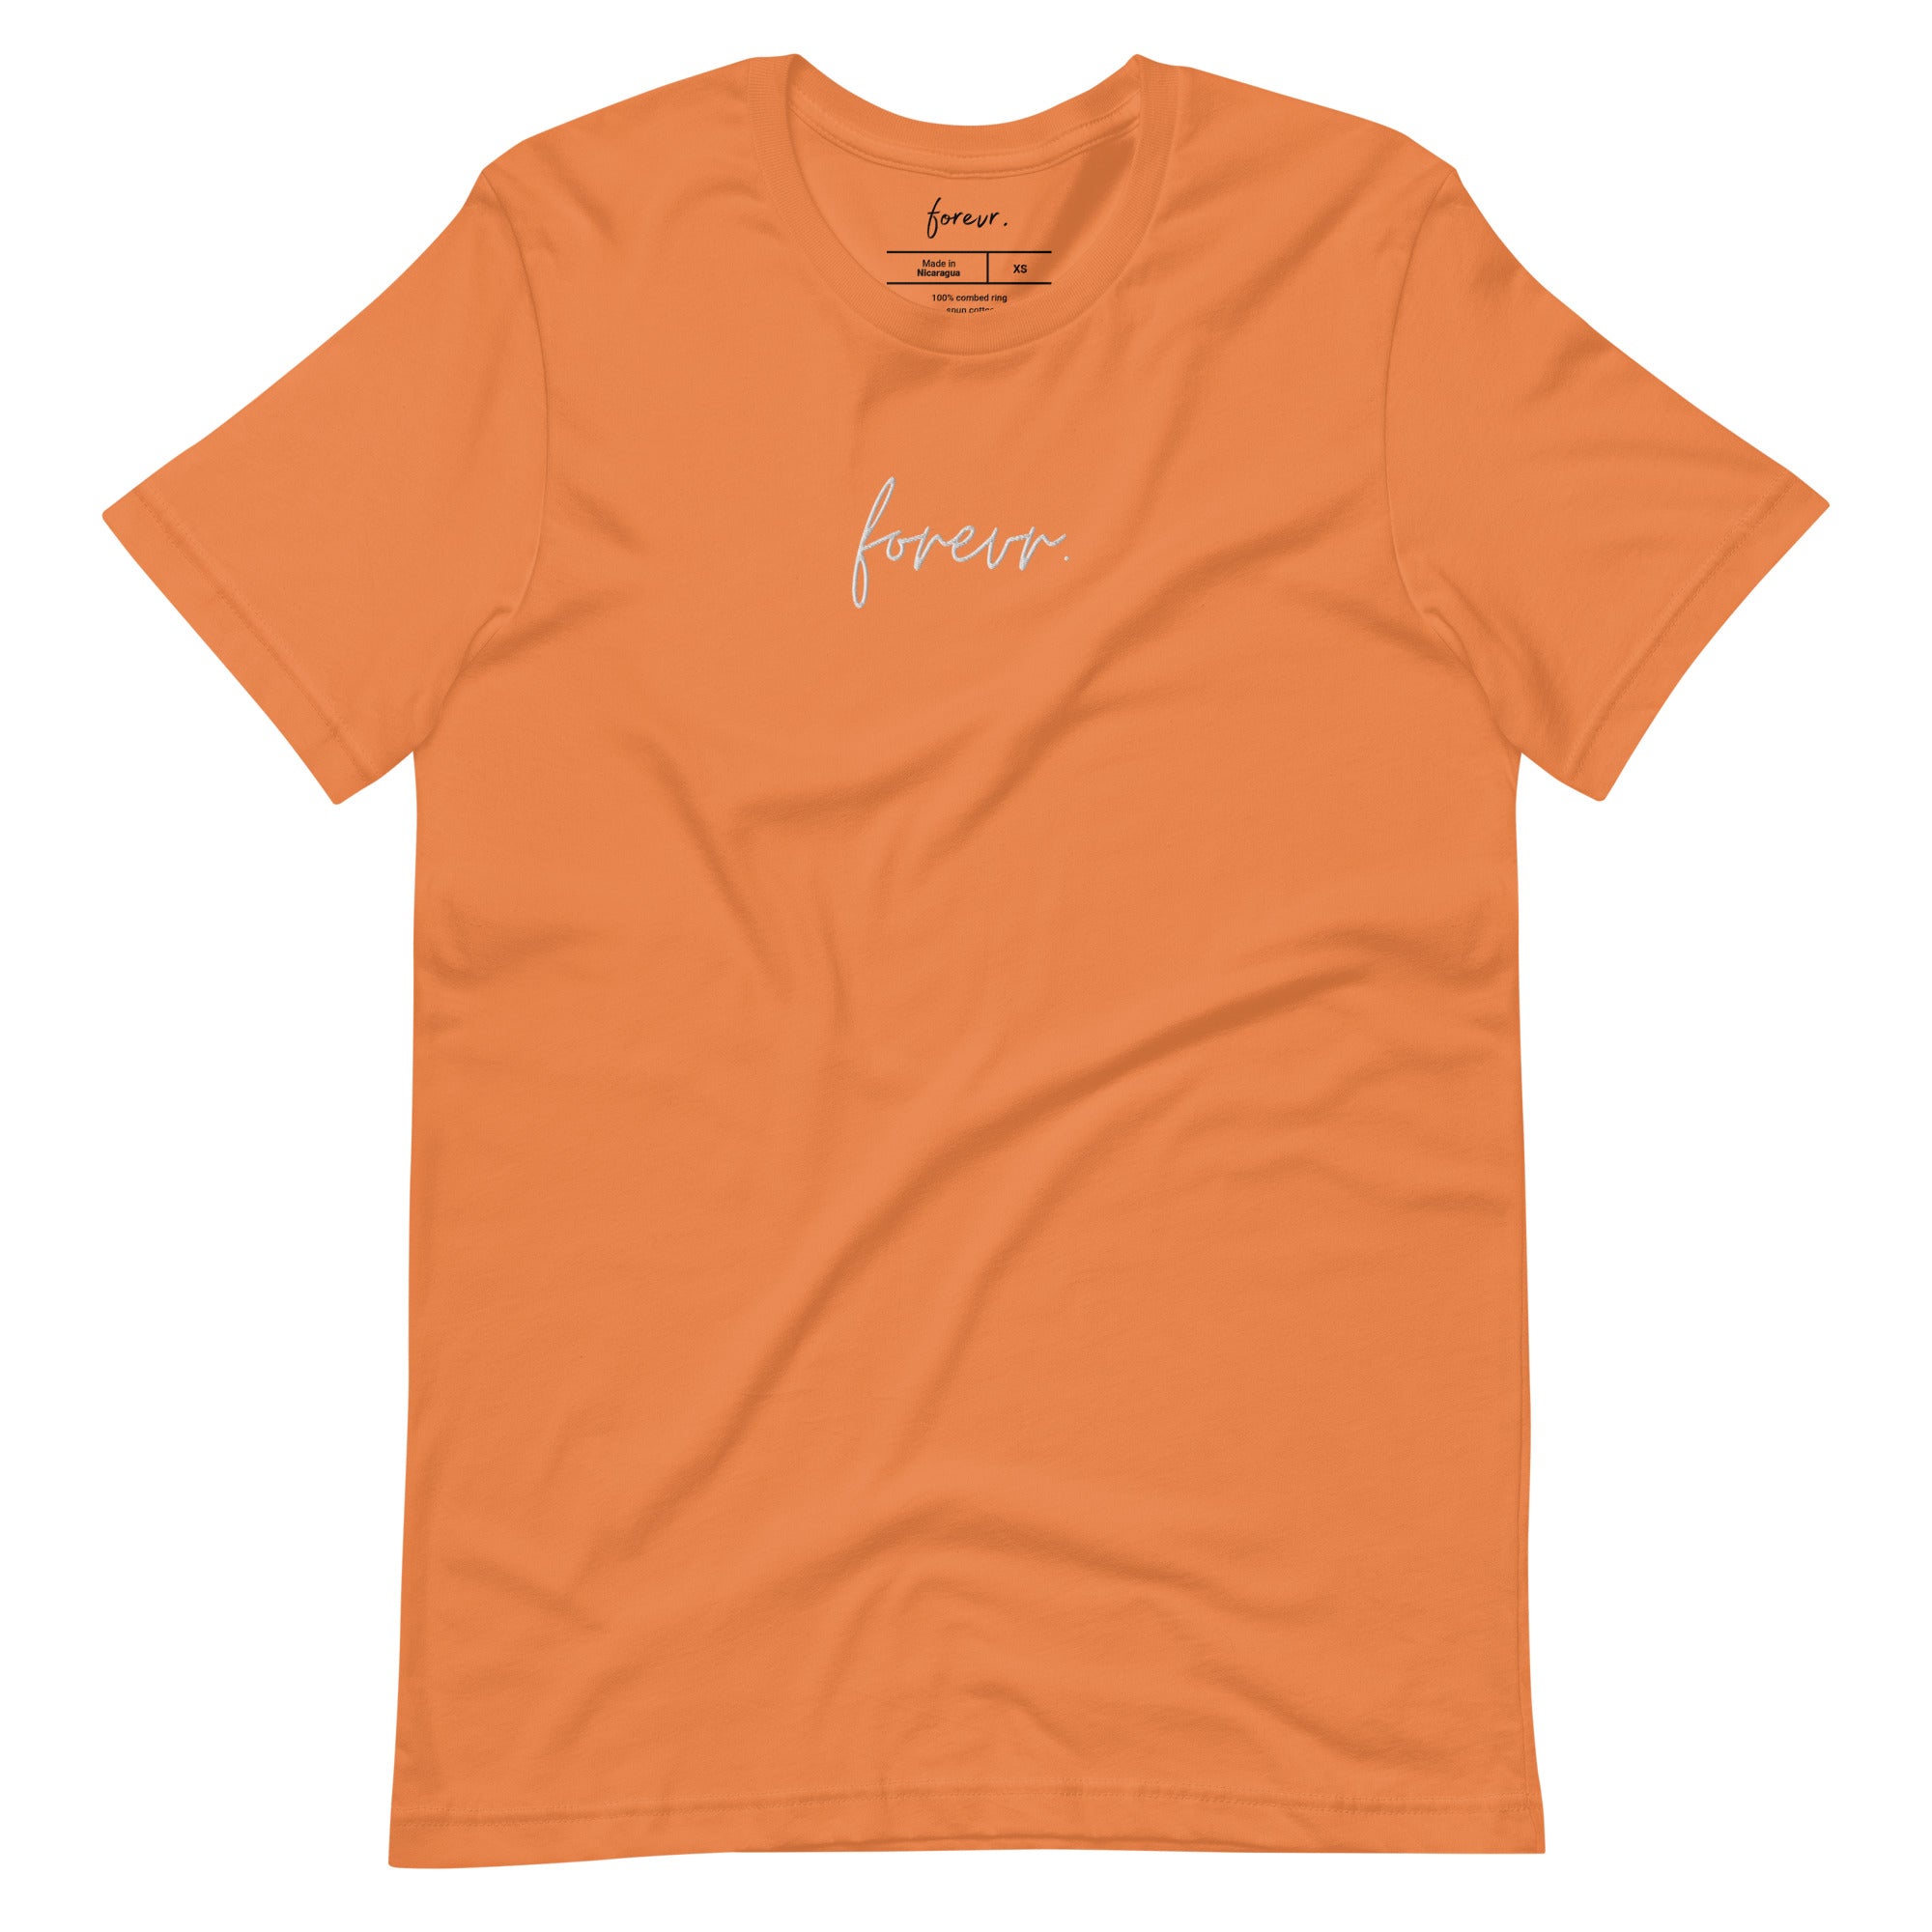 Forevr. Evr Tee (Orange/Teal)